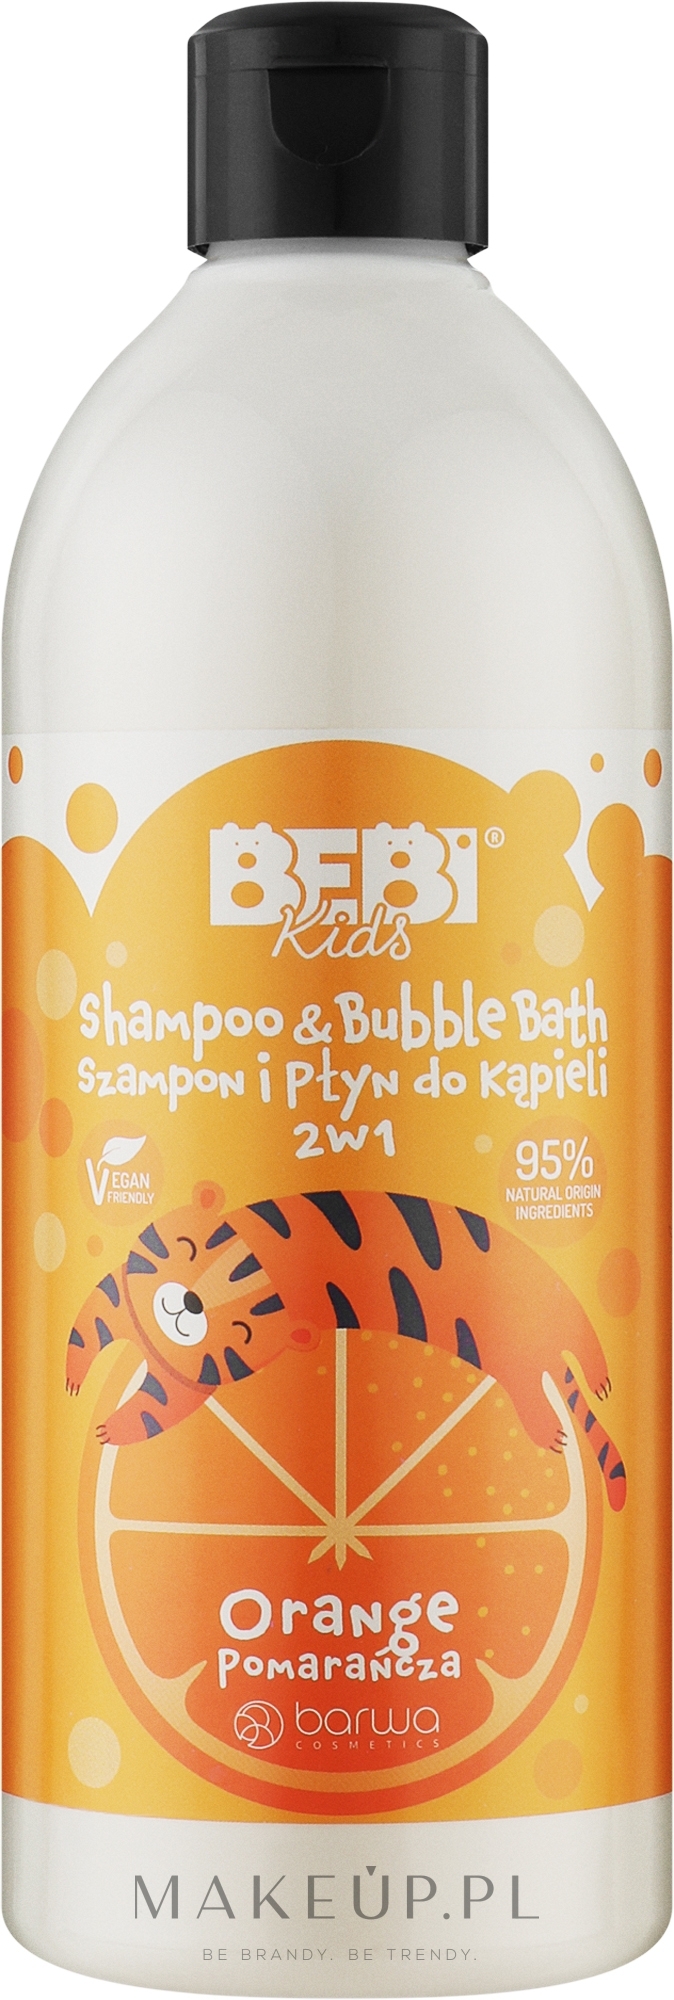 Beauty Jar Bubbles Szampon i żel do mycia dla dzieci 500ml